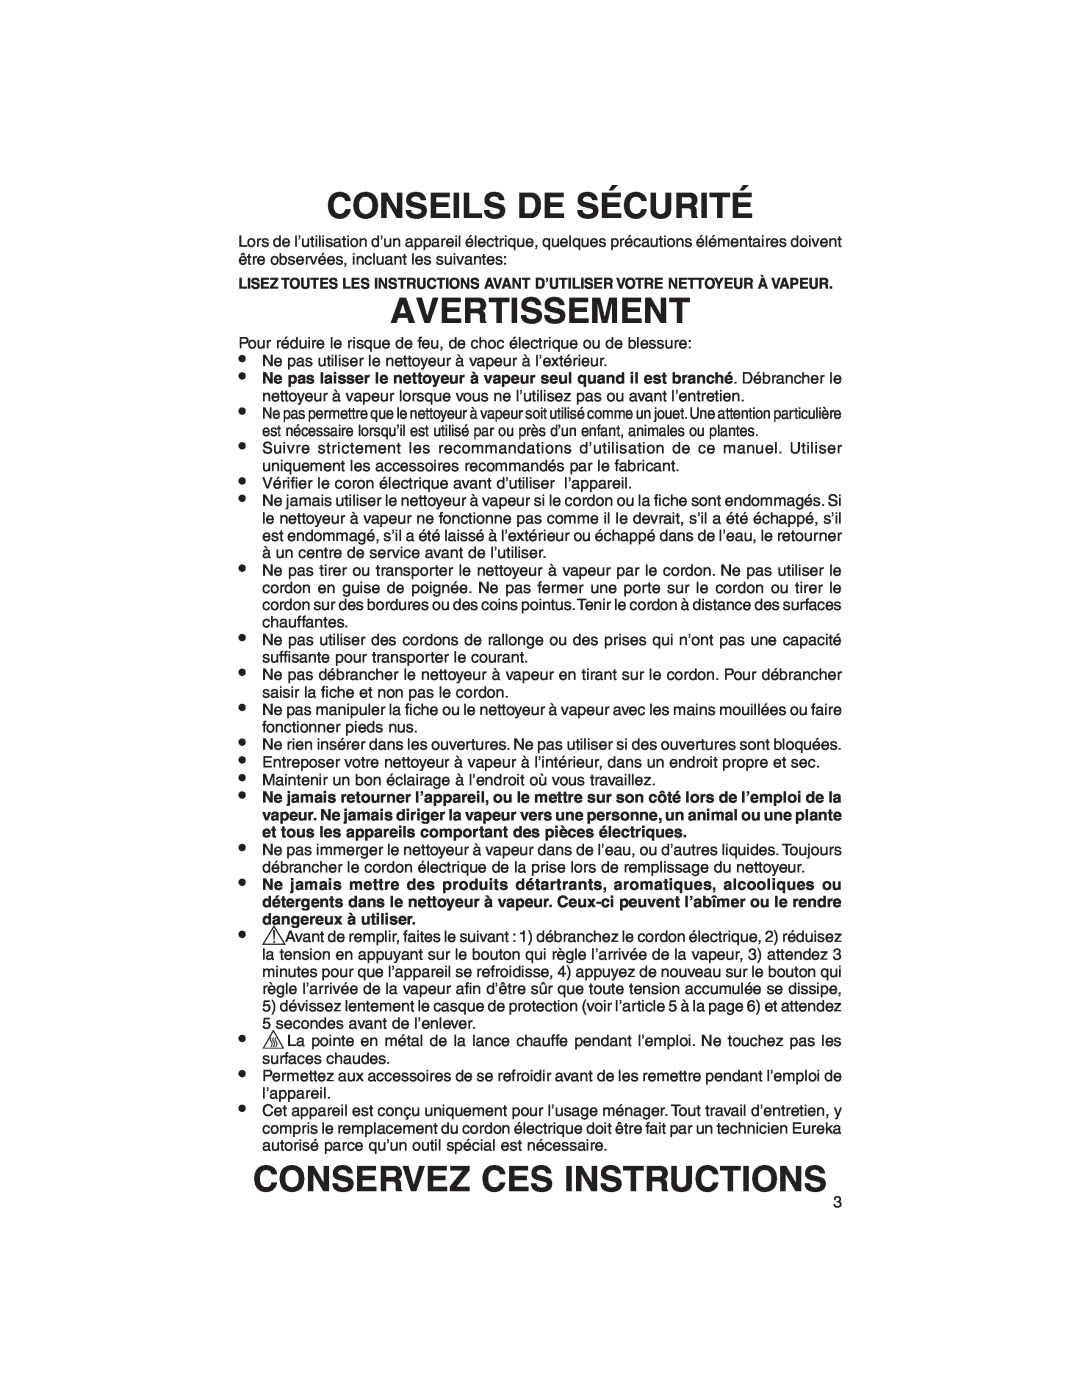 Eureka 340, 350 warranty Conseils De Sécurité, Avertissement, Conservez Ces Instructions 